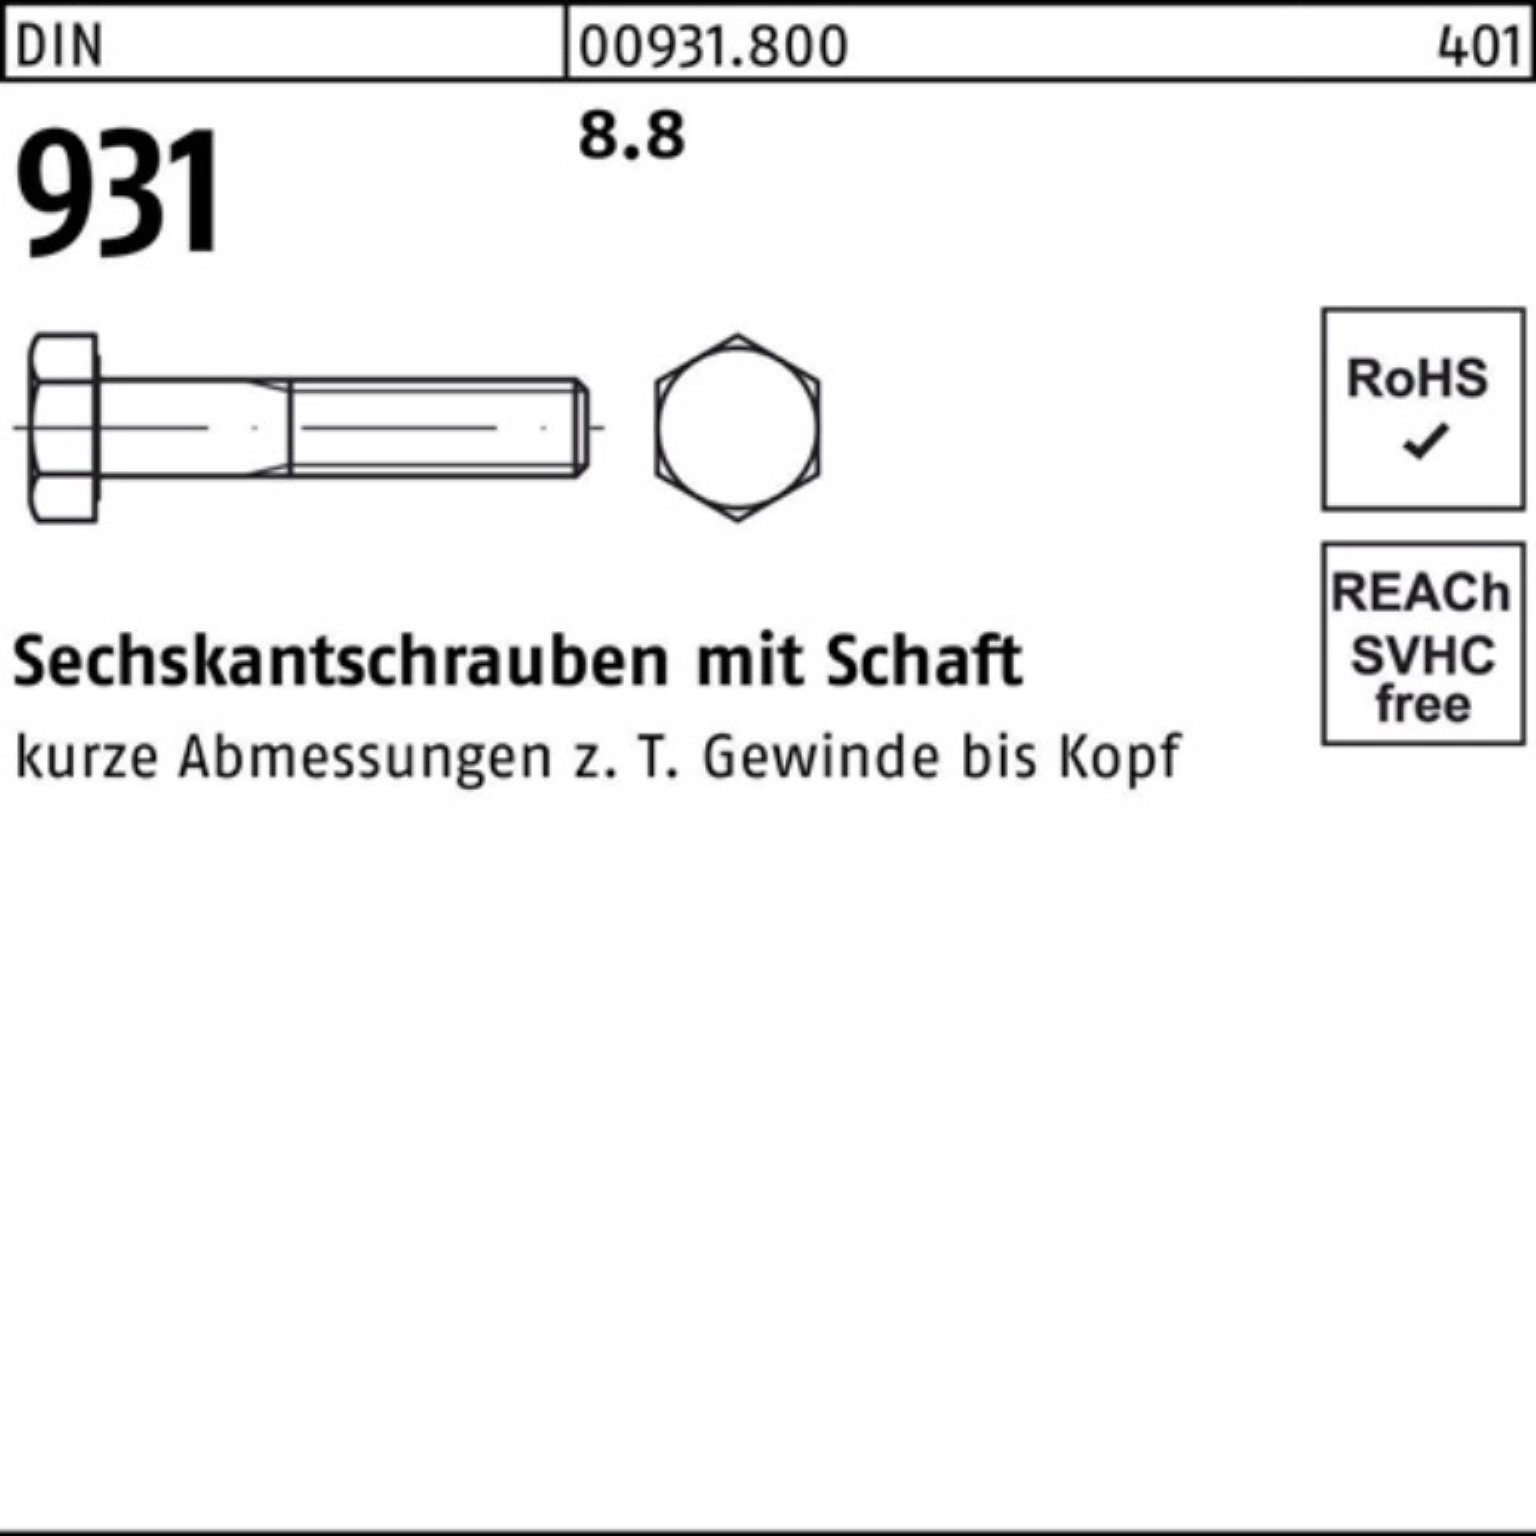 Reyher Sechskantschraube Sechskantschraube Stück 931 1 8.8 DIN 100er Schaft M33x DIN 160 Pack